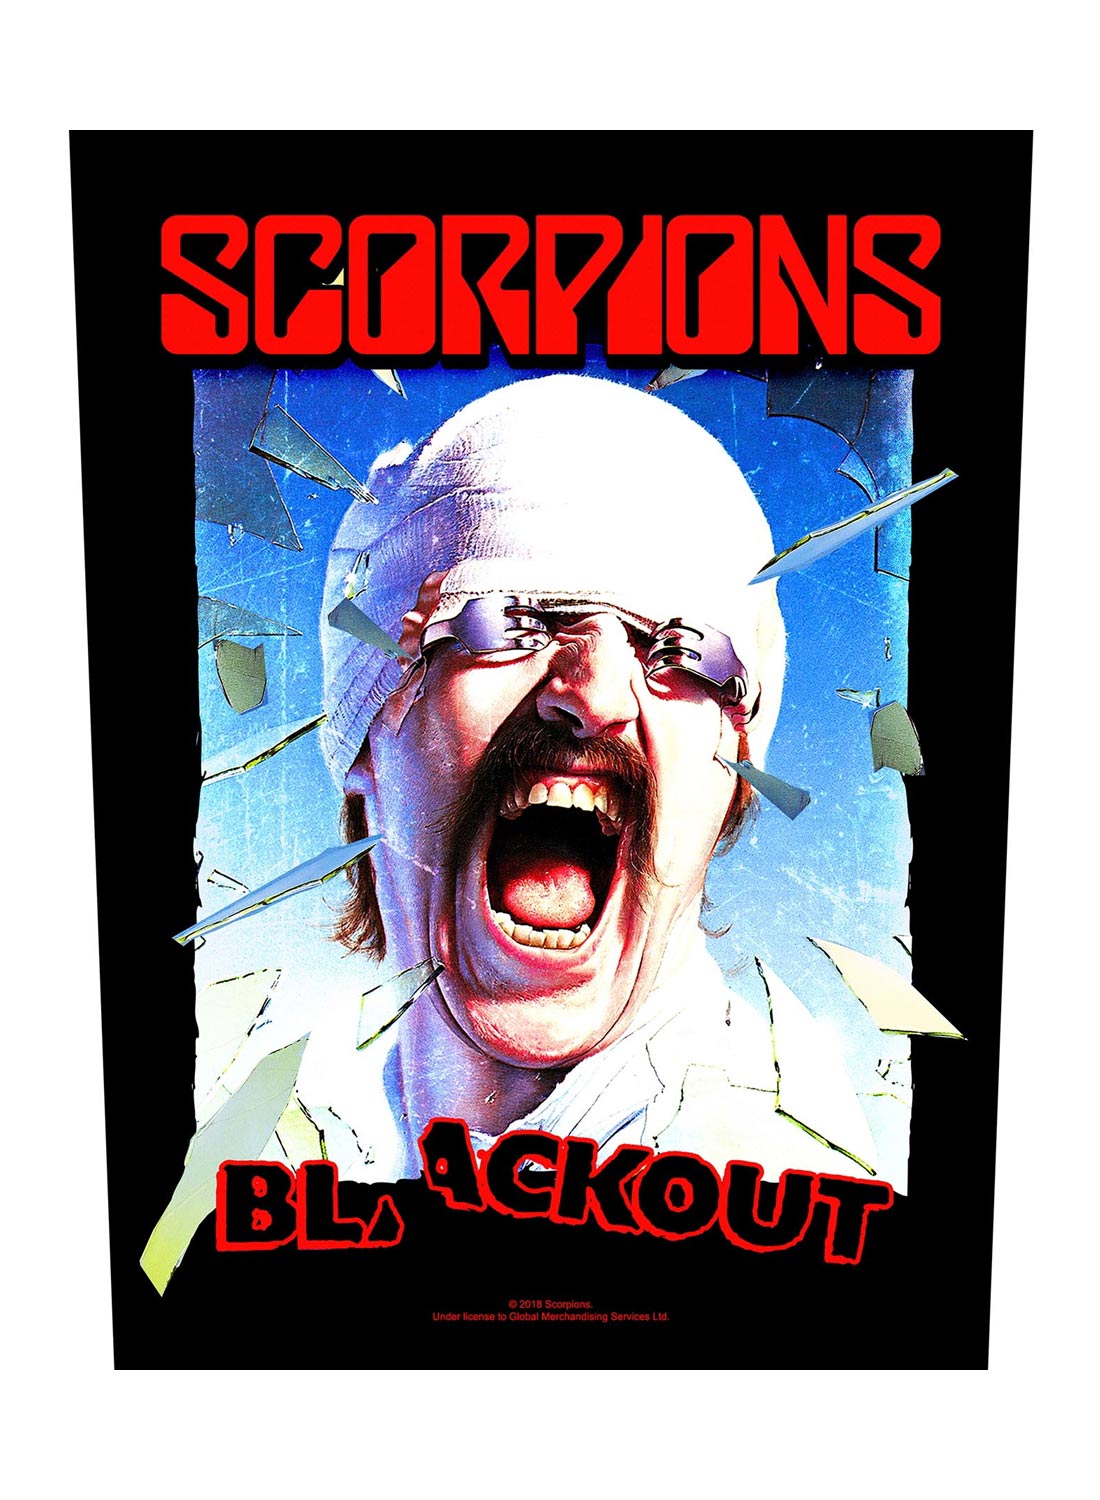 Scorpions Blackout Back Patch